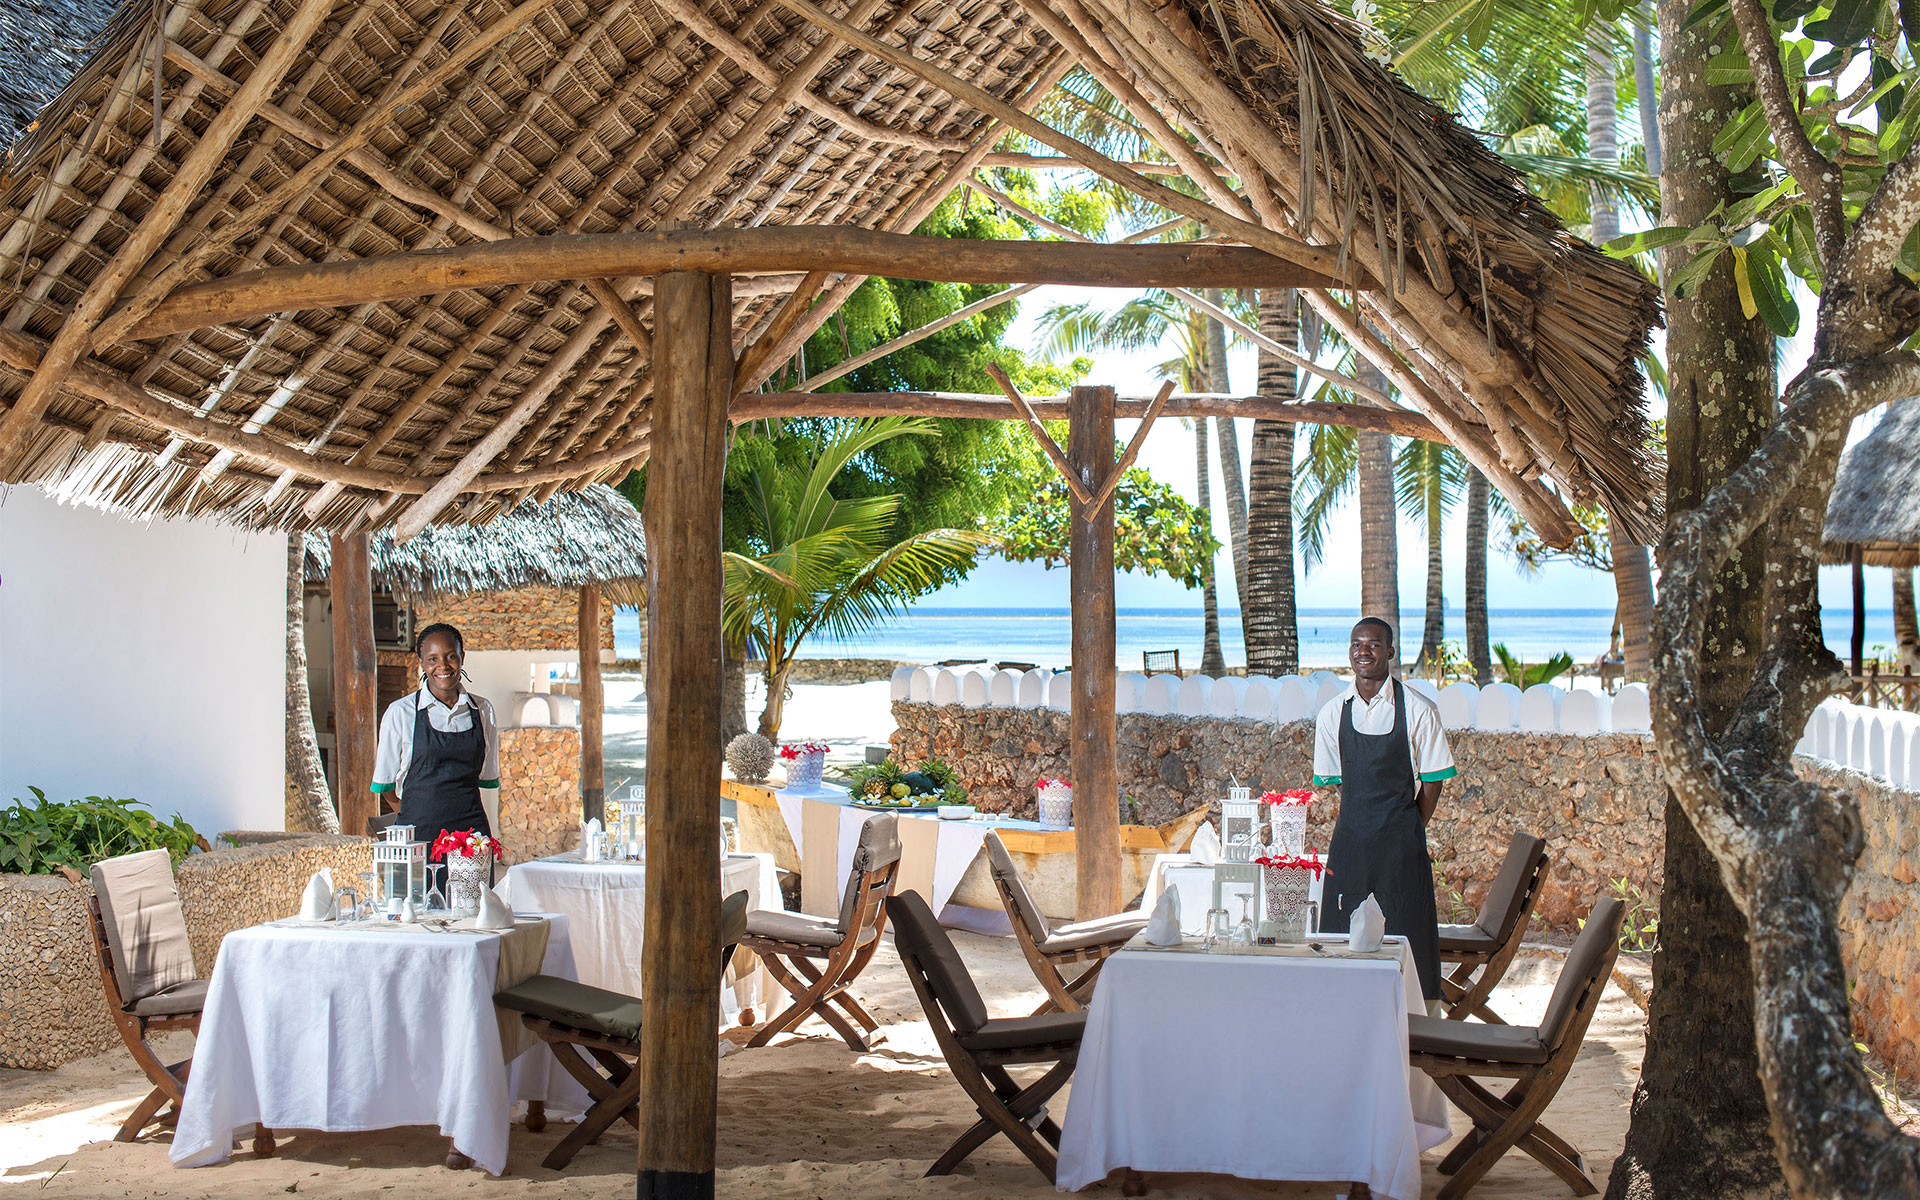 Welcome to Diamonds Mapenzi Beach in Zanzibar, a resort in the heart of enchanting gardens overlooking the Indian Ocean 